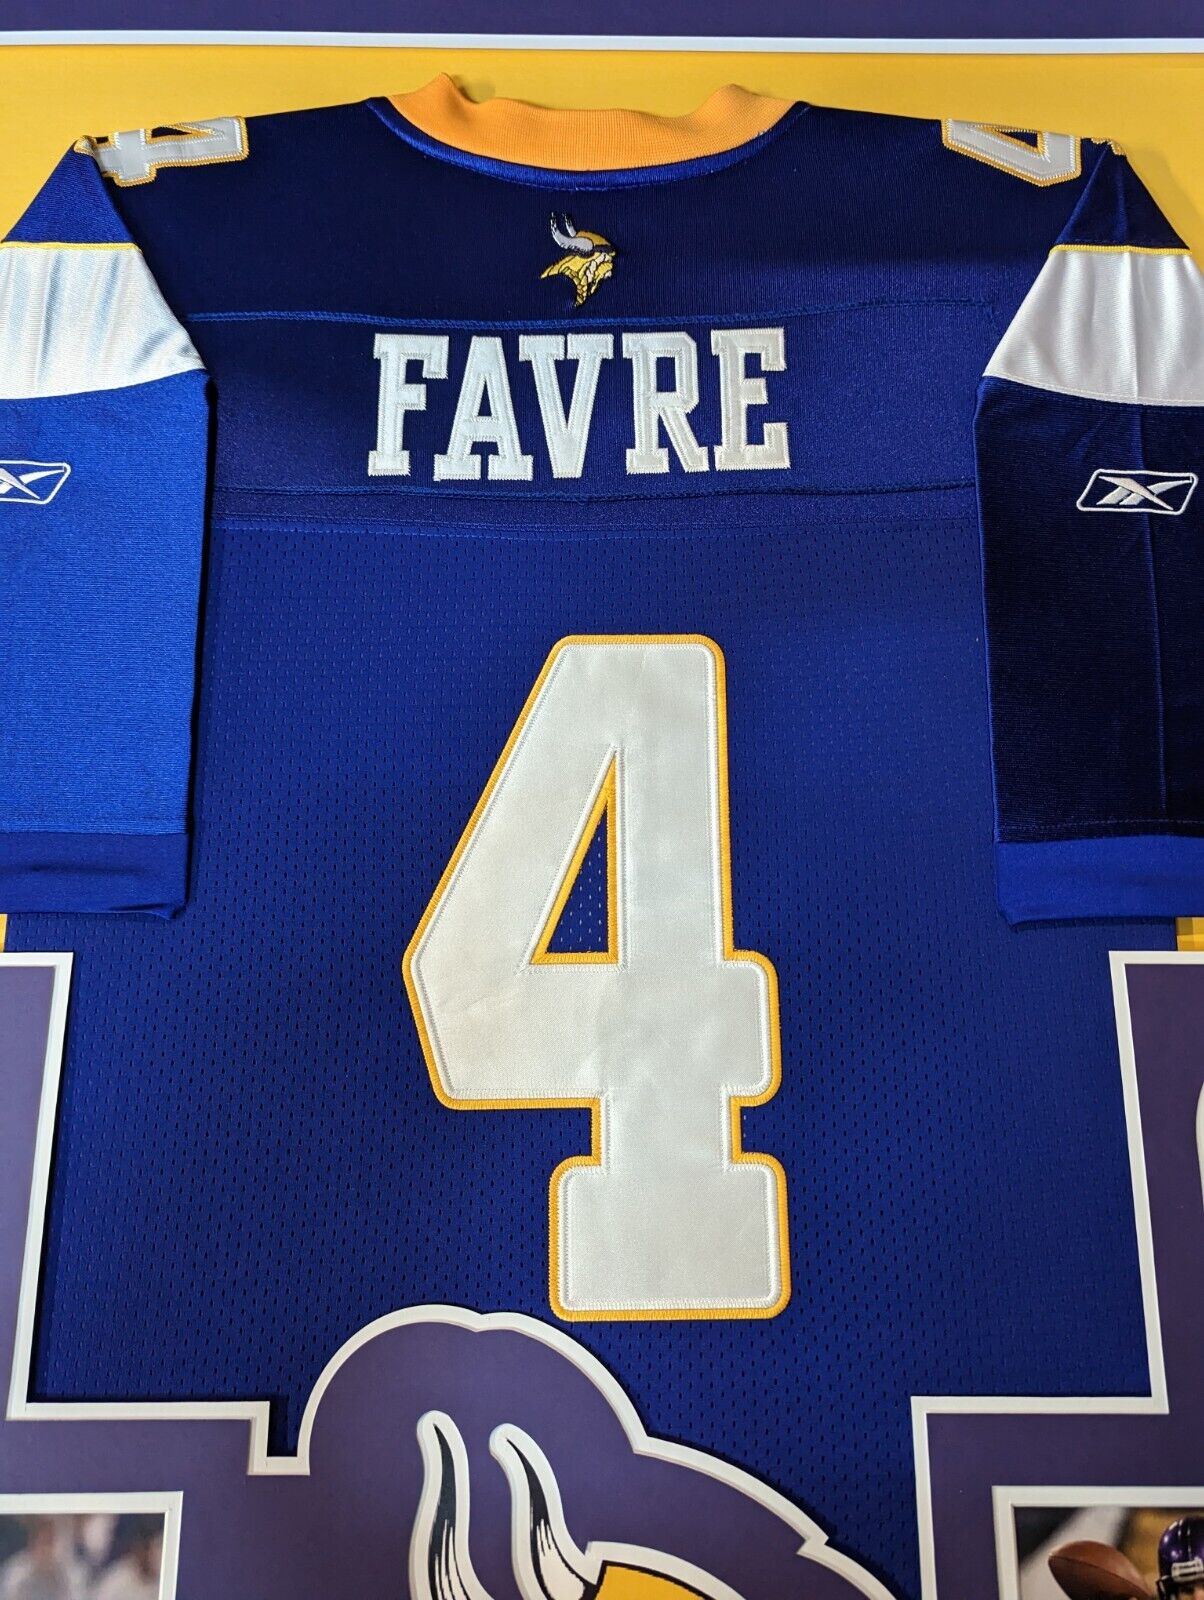 MVP Authentics Custom Framed Minnesota Vikings Brett Favre Jersey Display 270 sports jersey framing , jersey framing